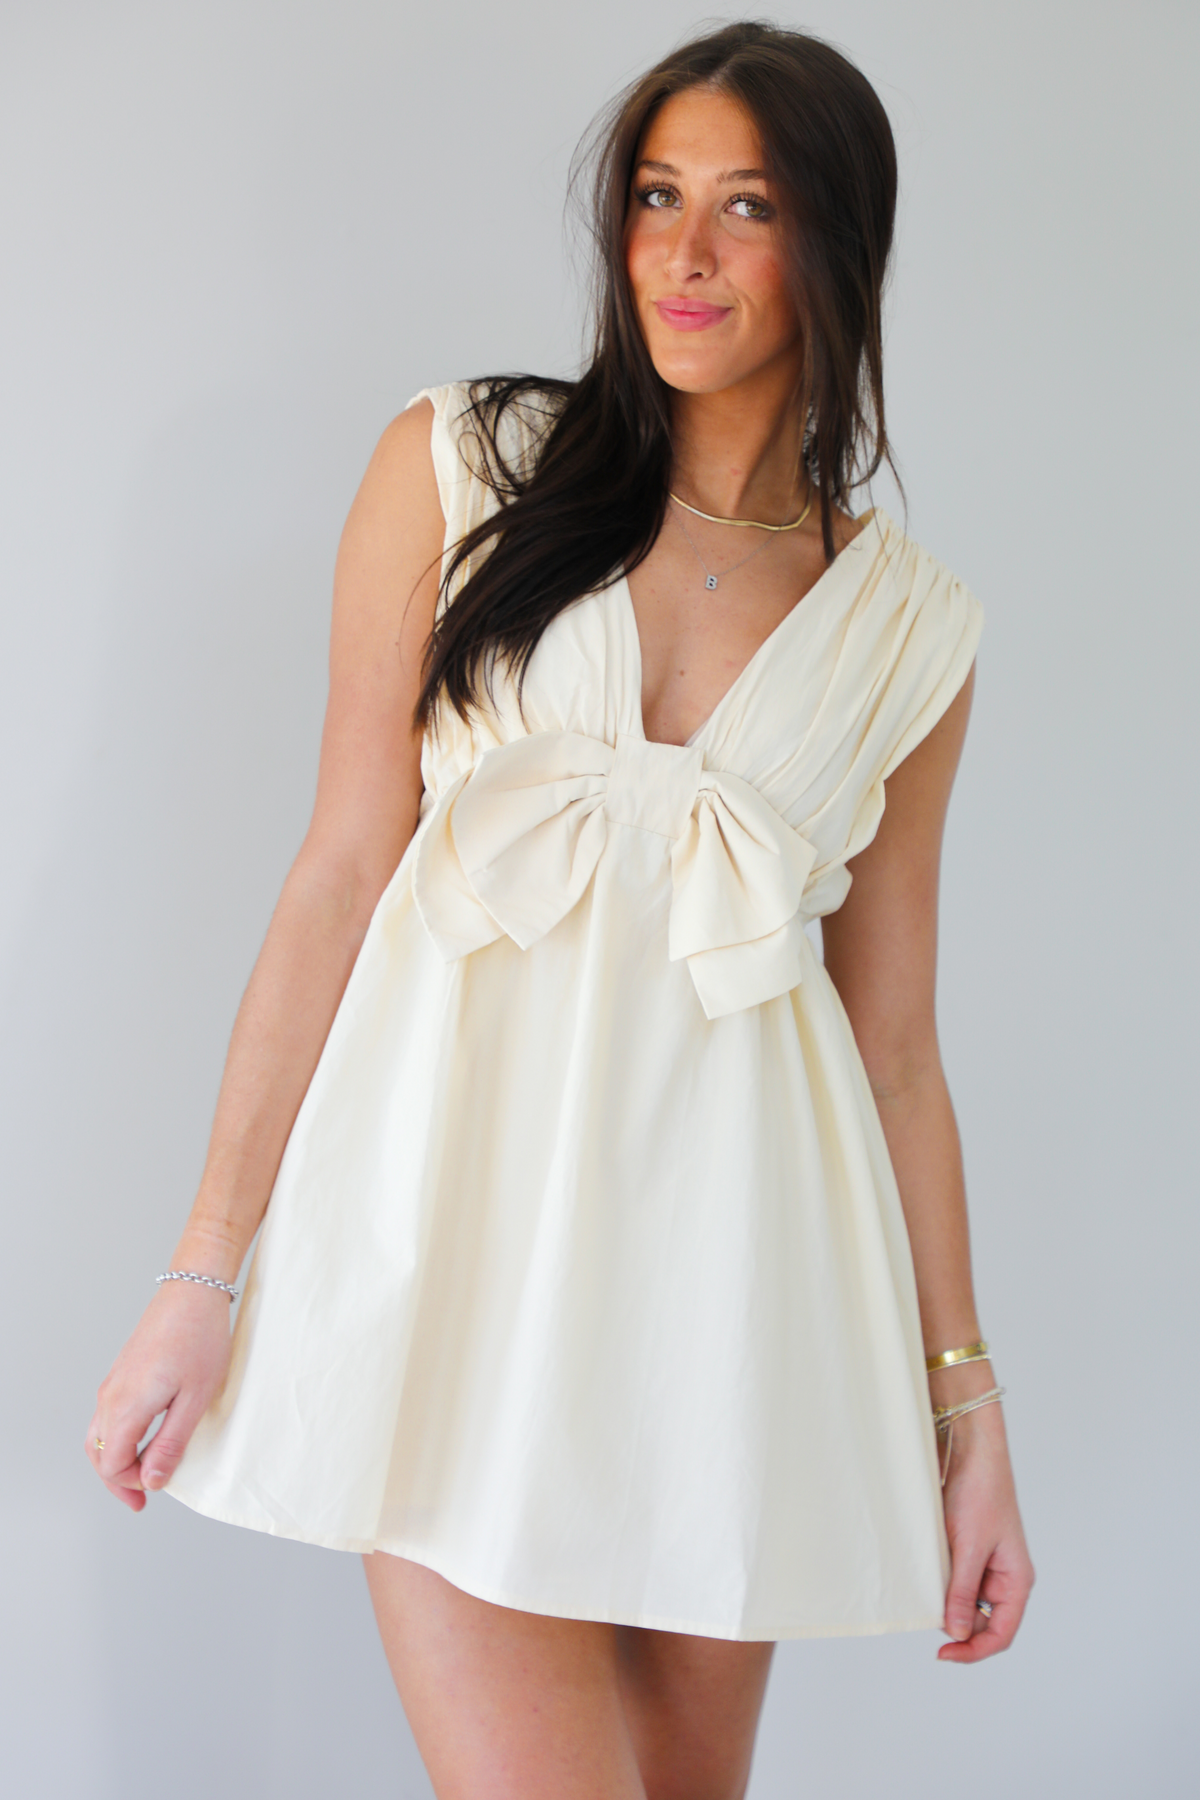 Vacay Dress: Cream